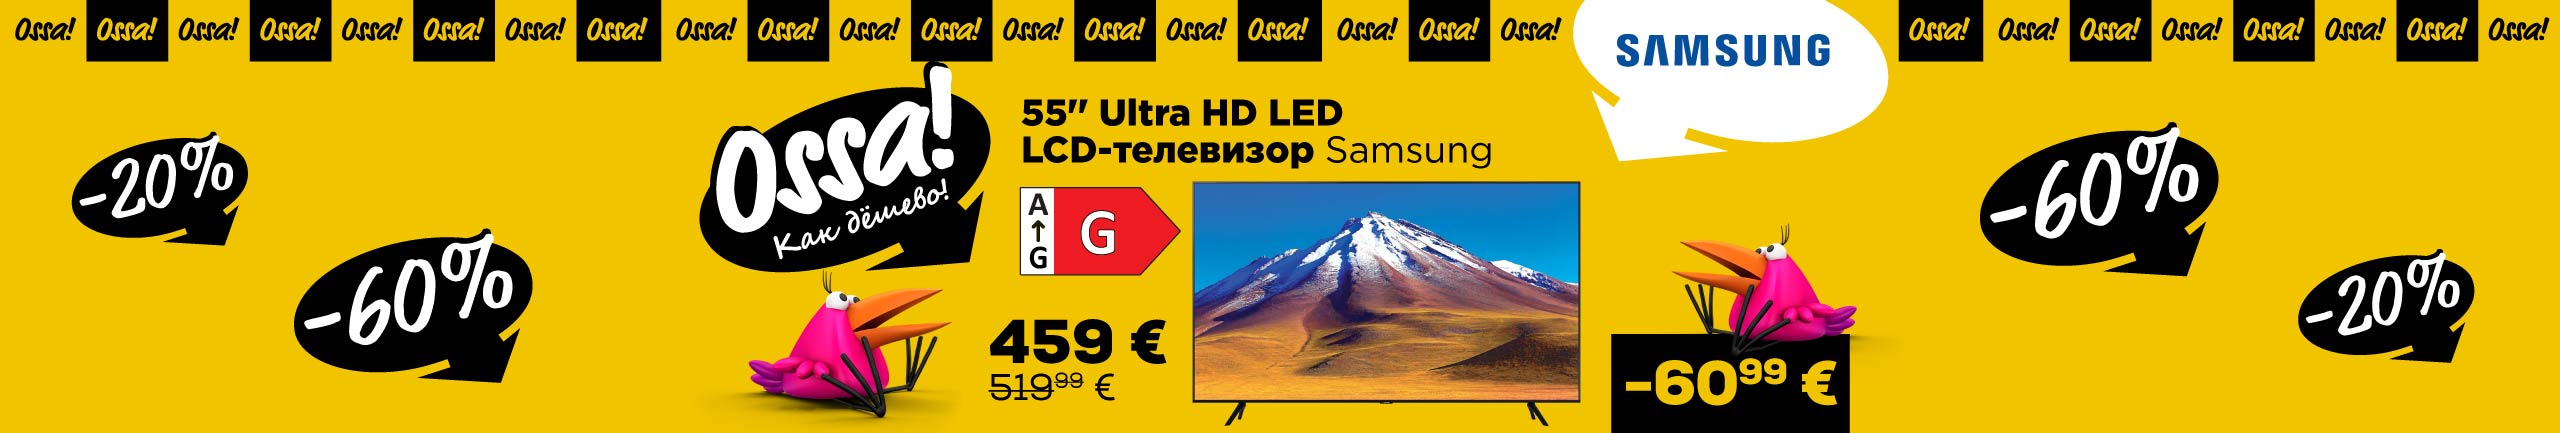 NPL  Ossa! Срок кампании продлевается! 55'' Ultra HD LED LCD-телевизор Samsung 